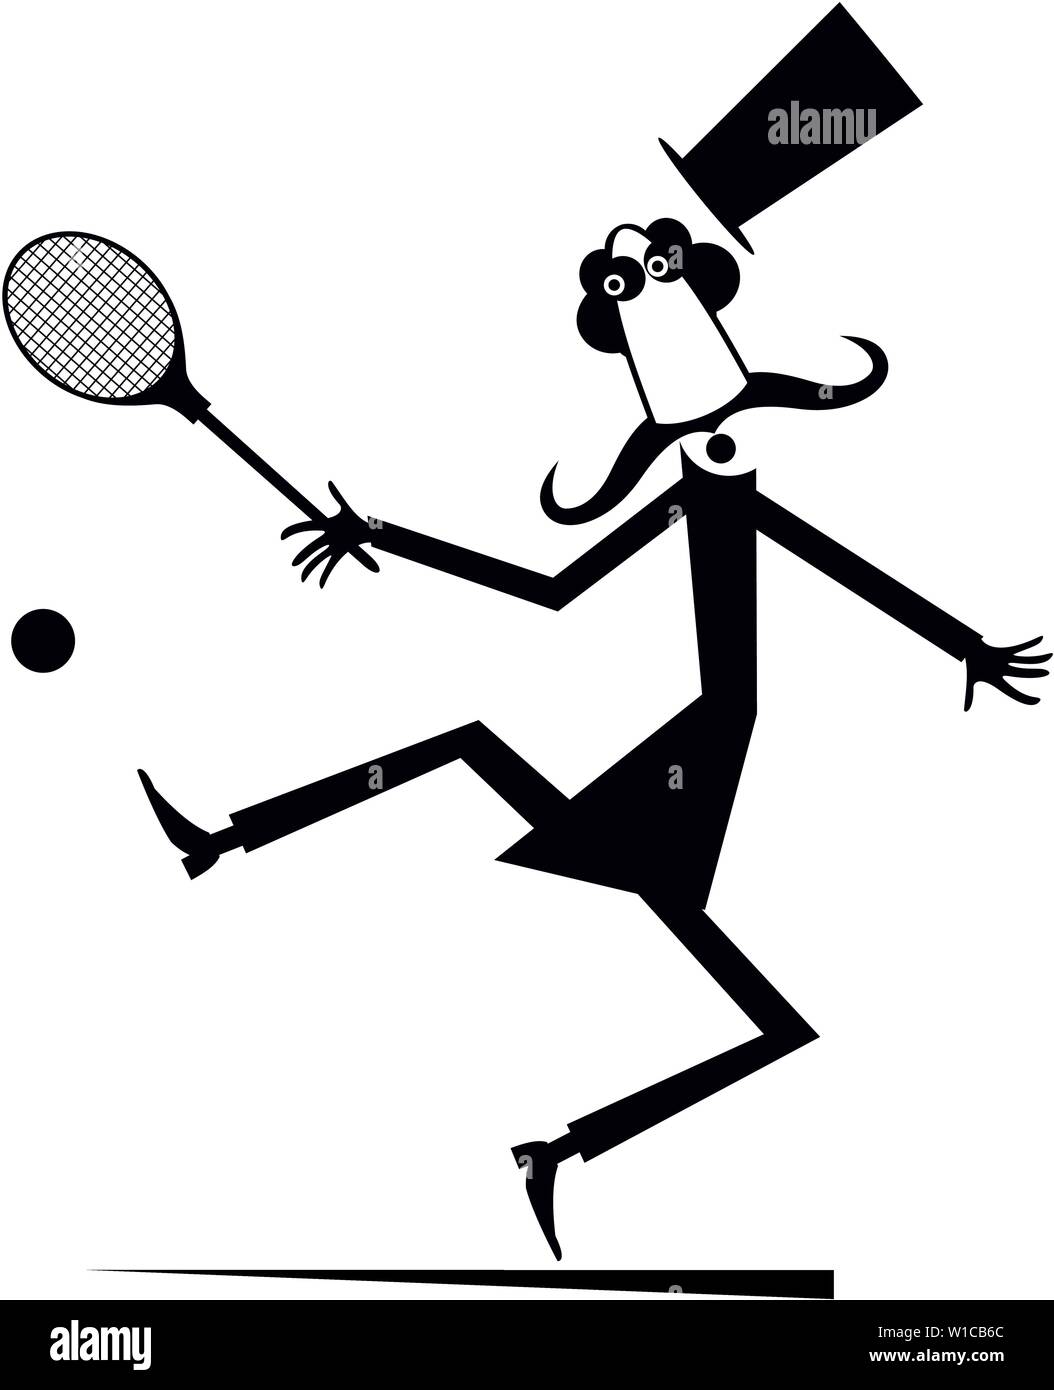 Monsieur joue au tennis illustration isolé. Dans l'homme moustache top hat joue au tennis Illustration de Vecteur